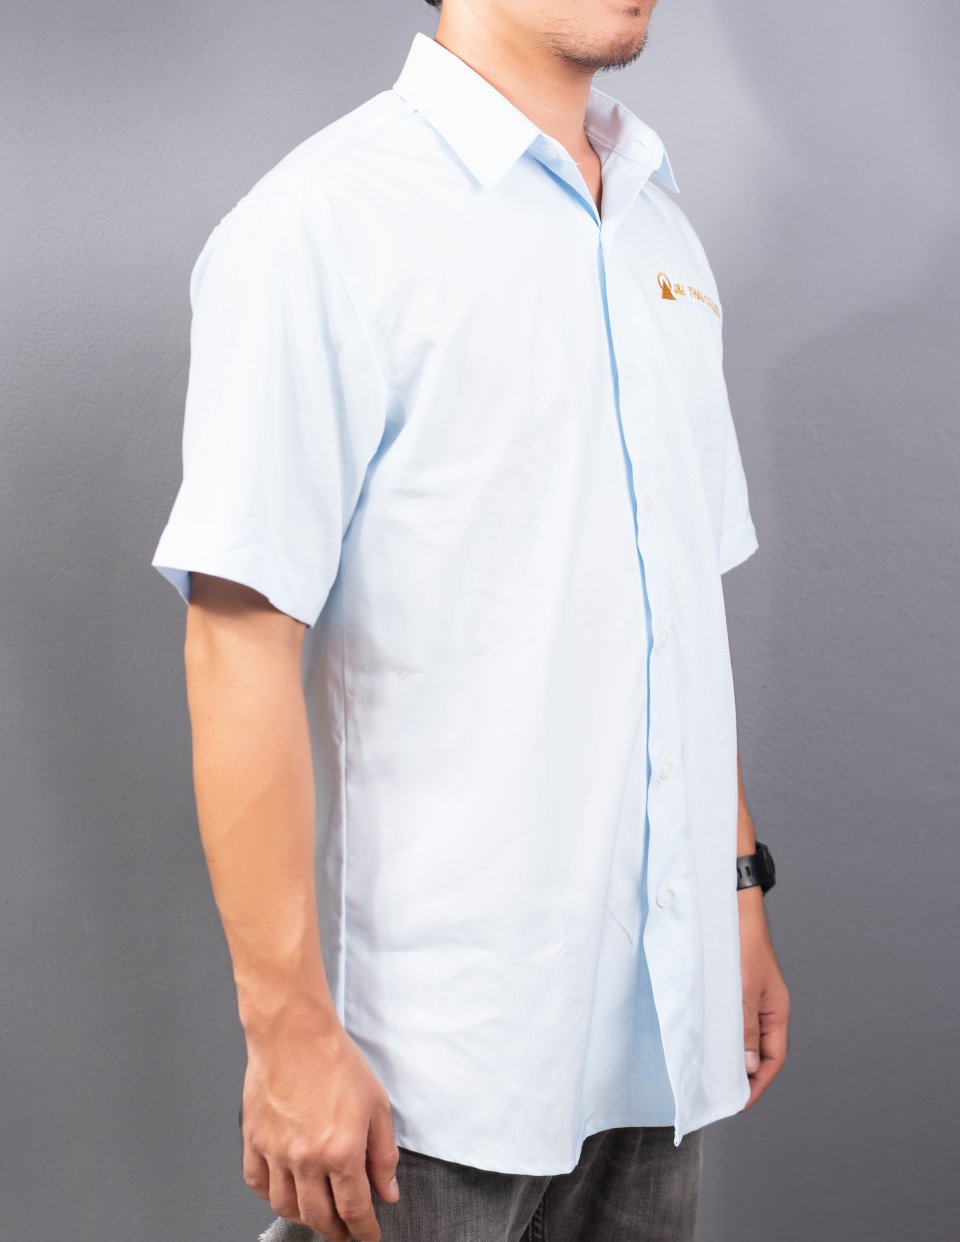 ตัวอย่างเสื้อเชิ้ตพนักงานแขนสั้น J&I THAI CO.,LTD / นลินสิริ 2015 จำกัด รับผลิตเสื้อเชิ้ตพนักงานพร้อมปักโลโก้รูปที่ 